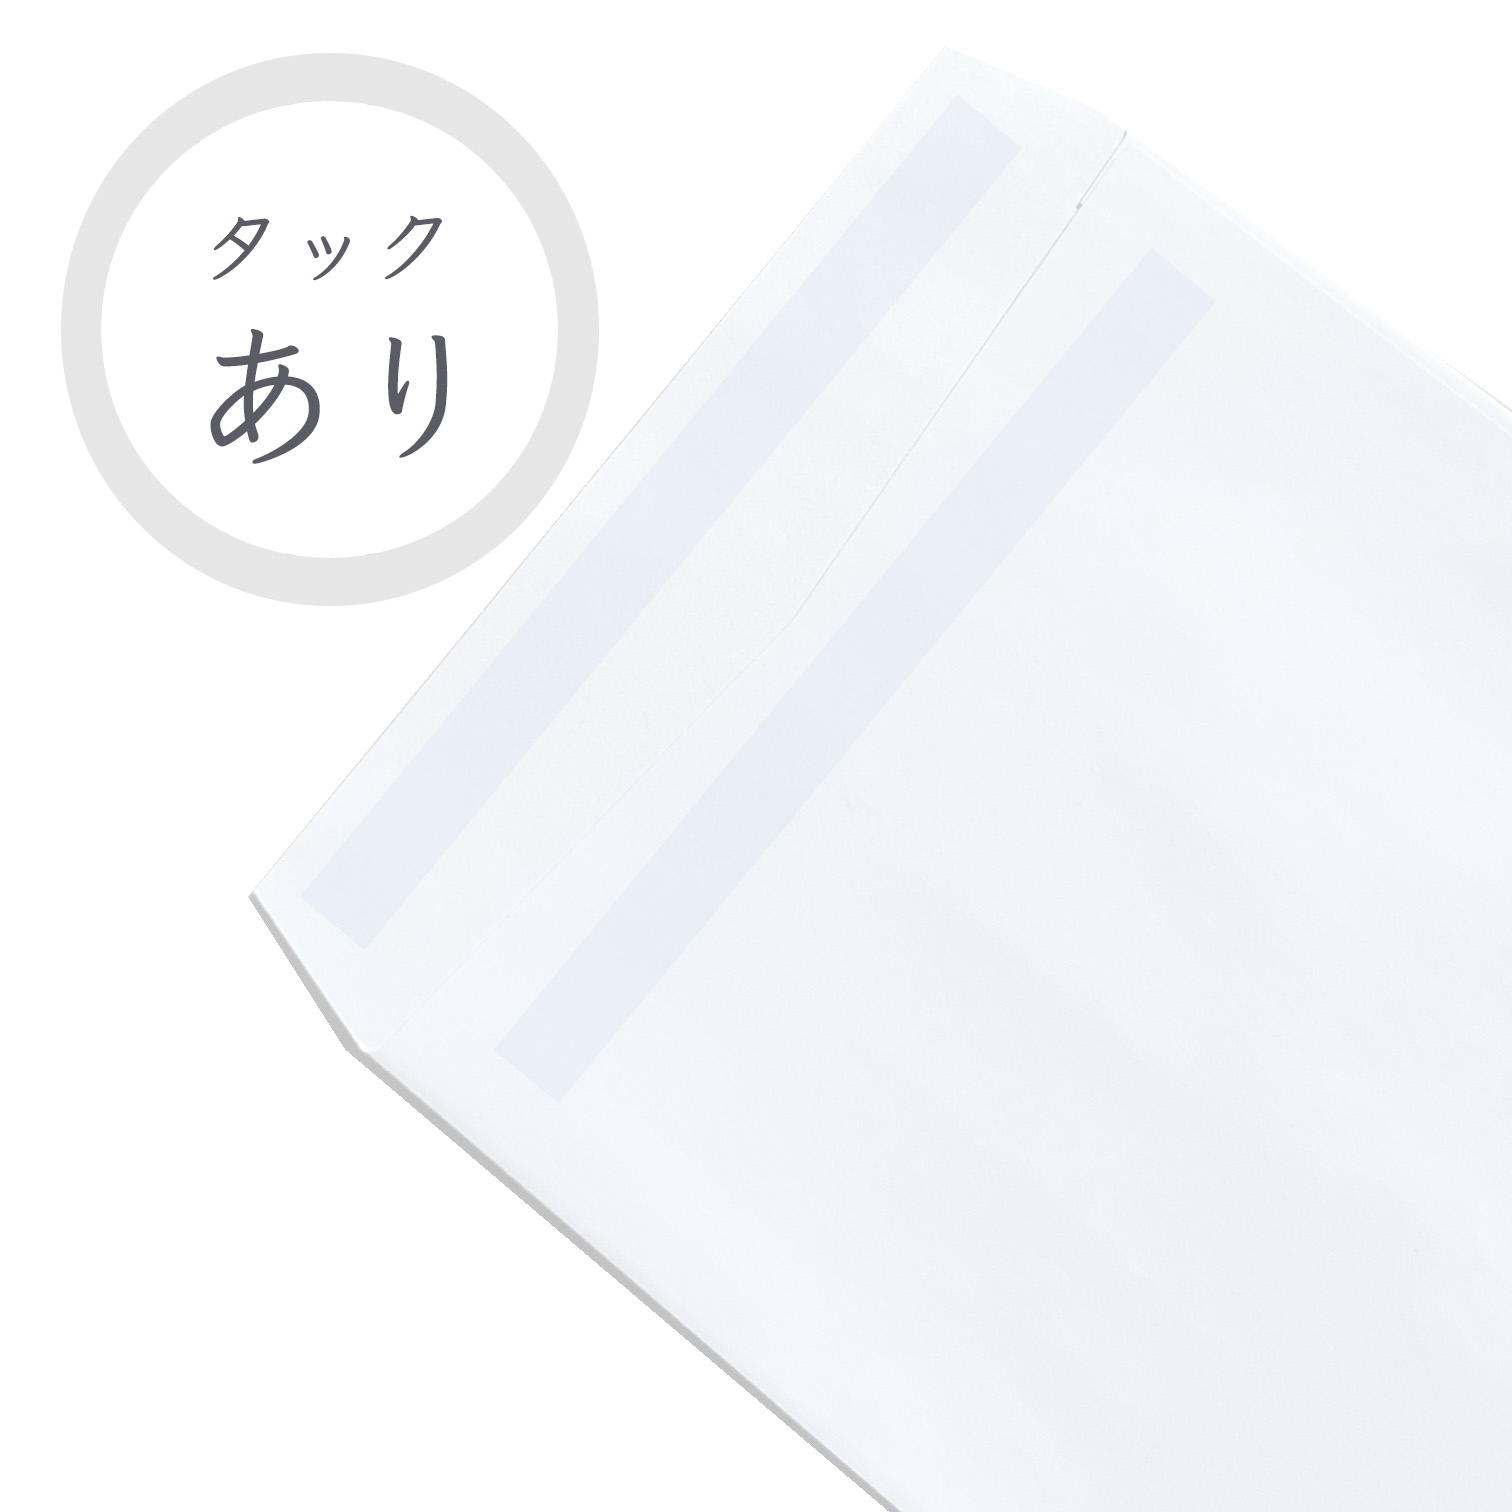 長3ホワイト封筒 80g/平米 タック付 1000枚 商品画像サムネイル5